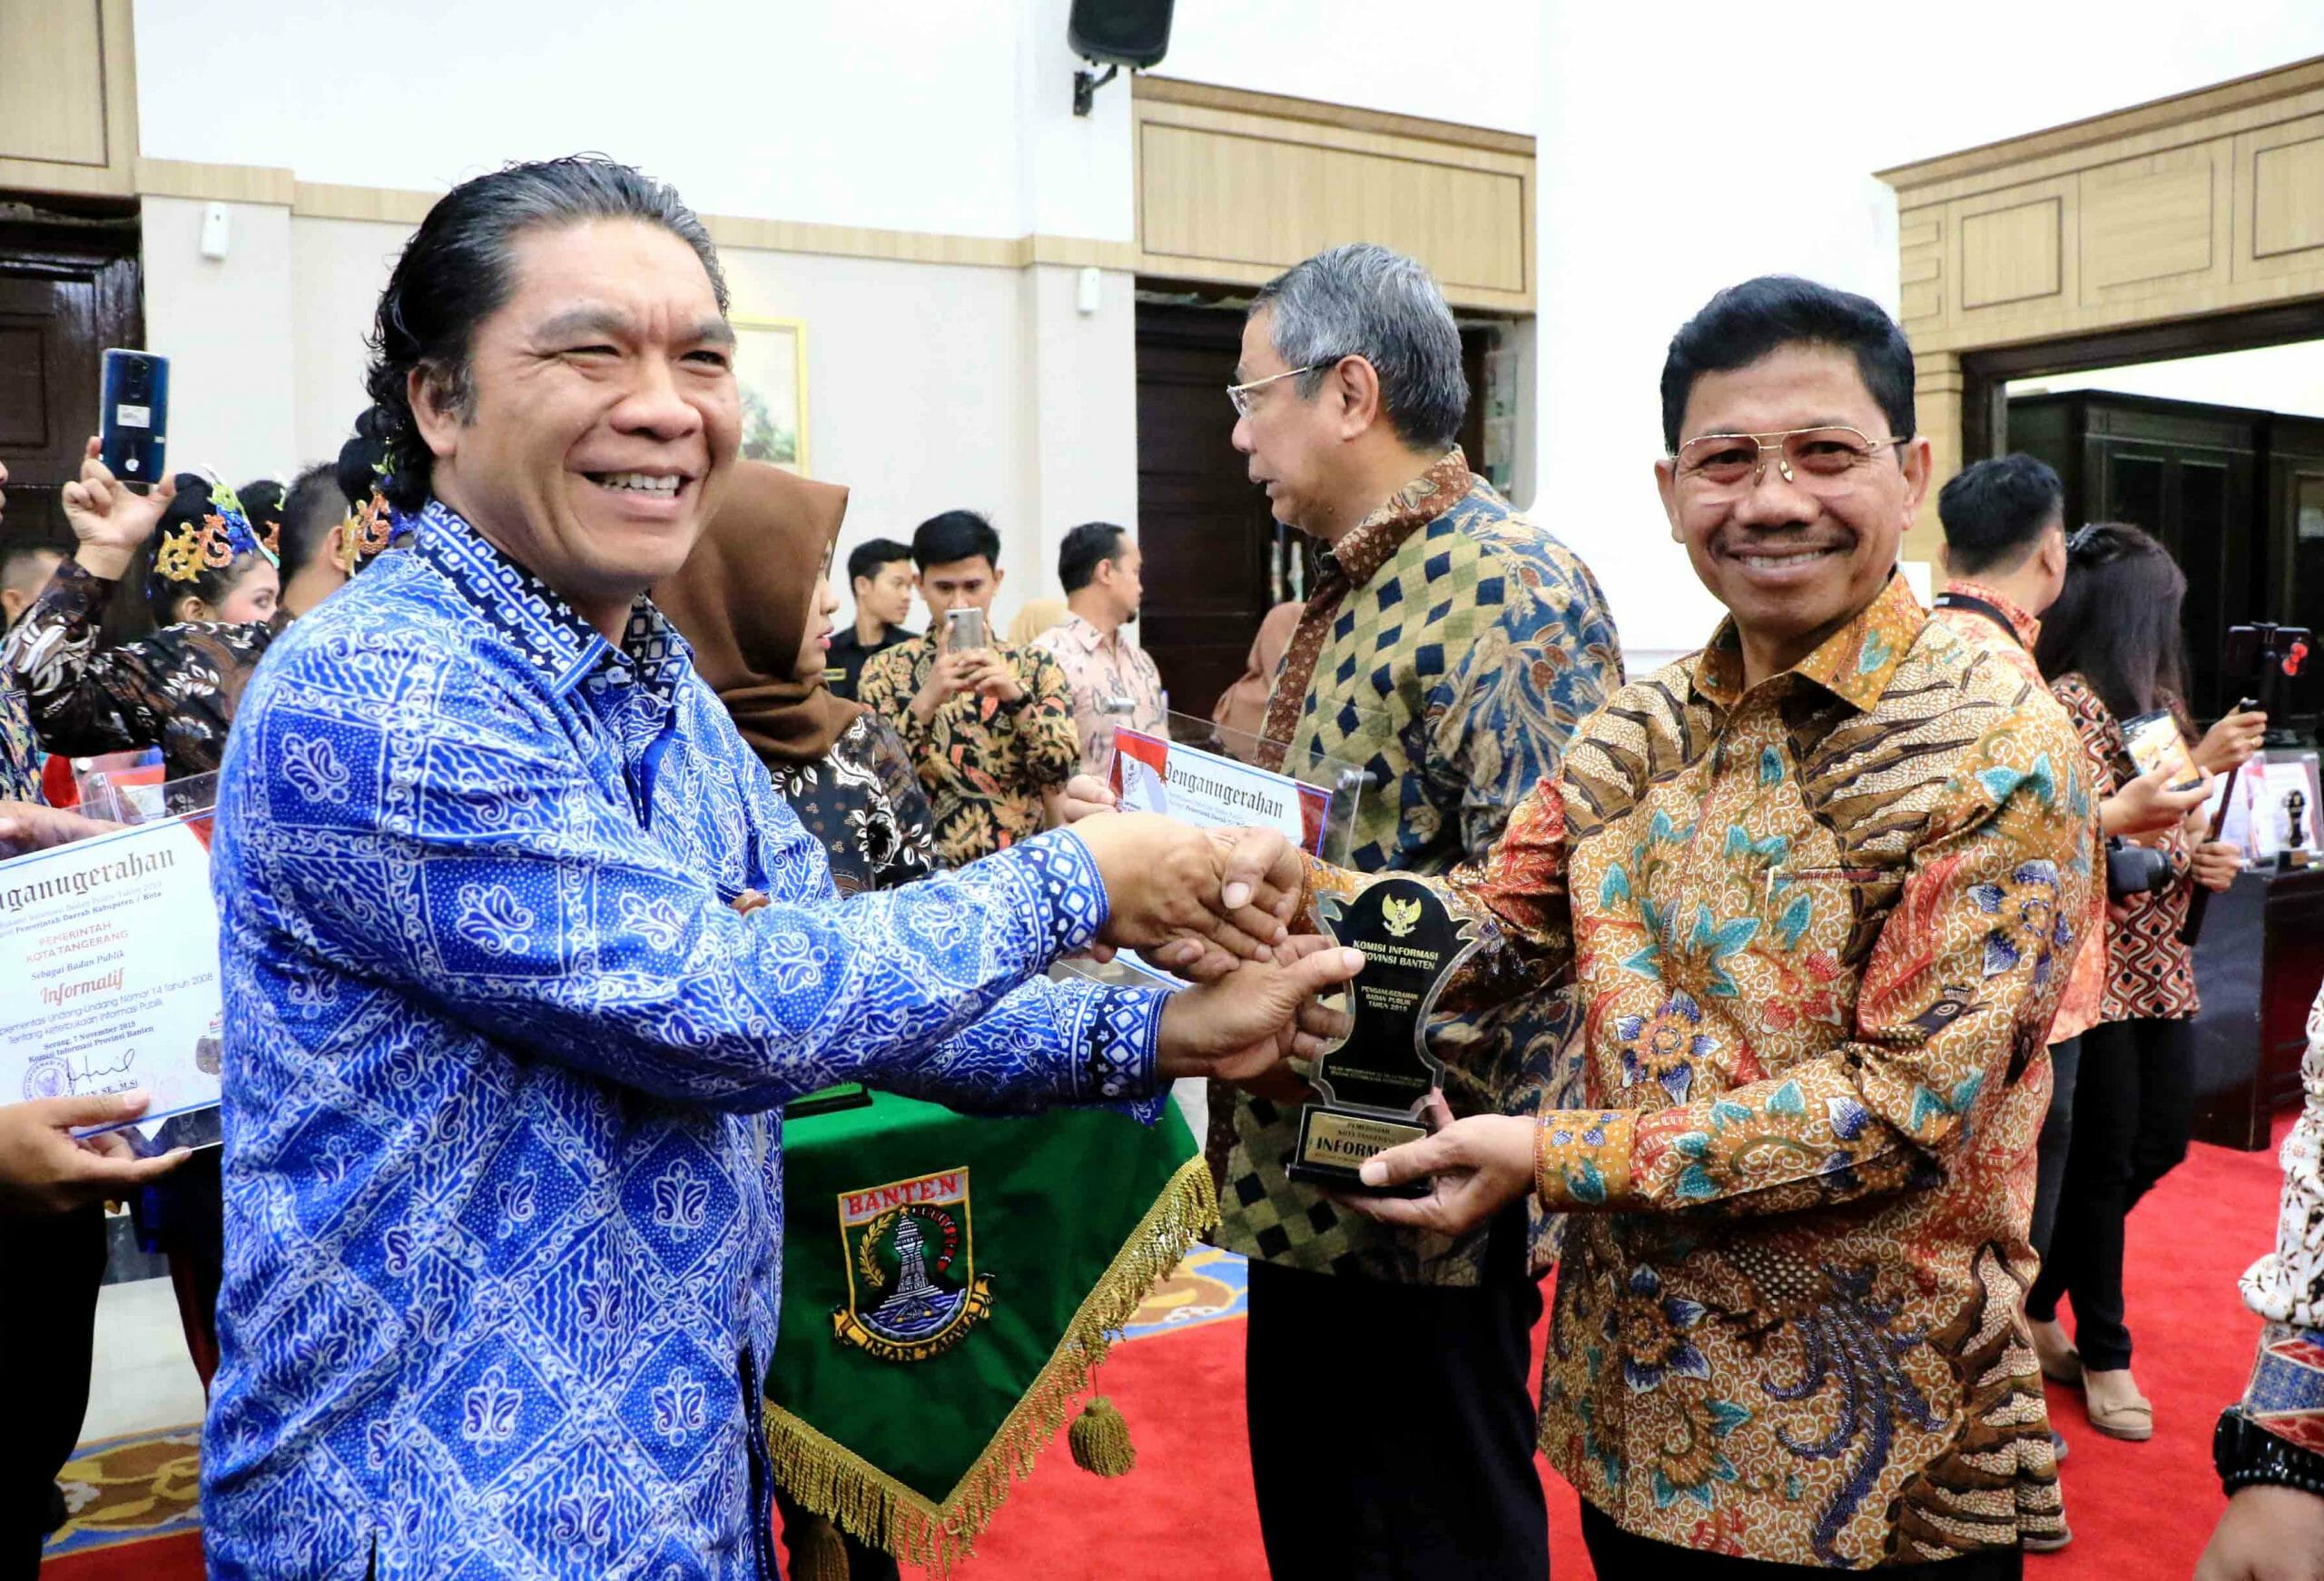 Penghargaan Badan Publik Kategori Informatif Kembali Diraih Kota Tangerang